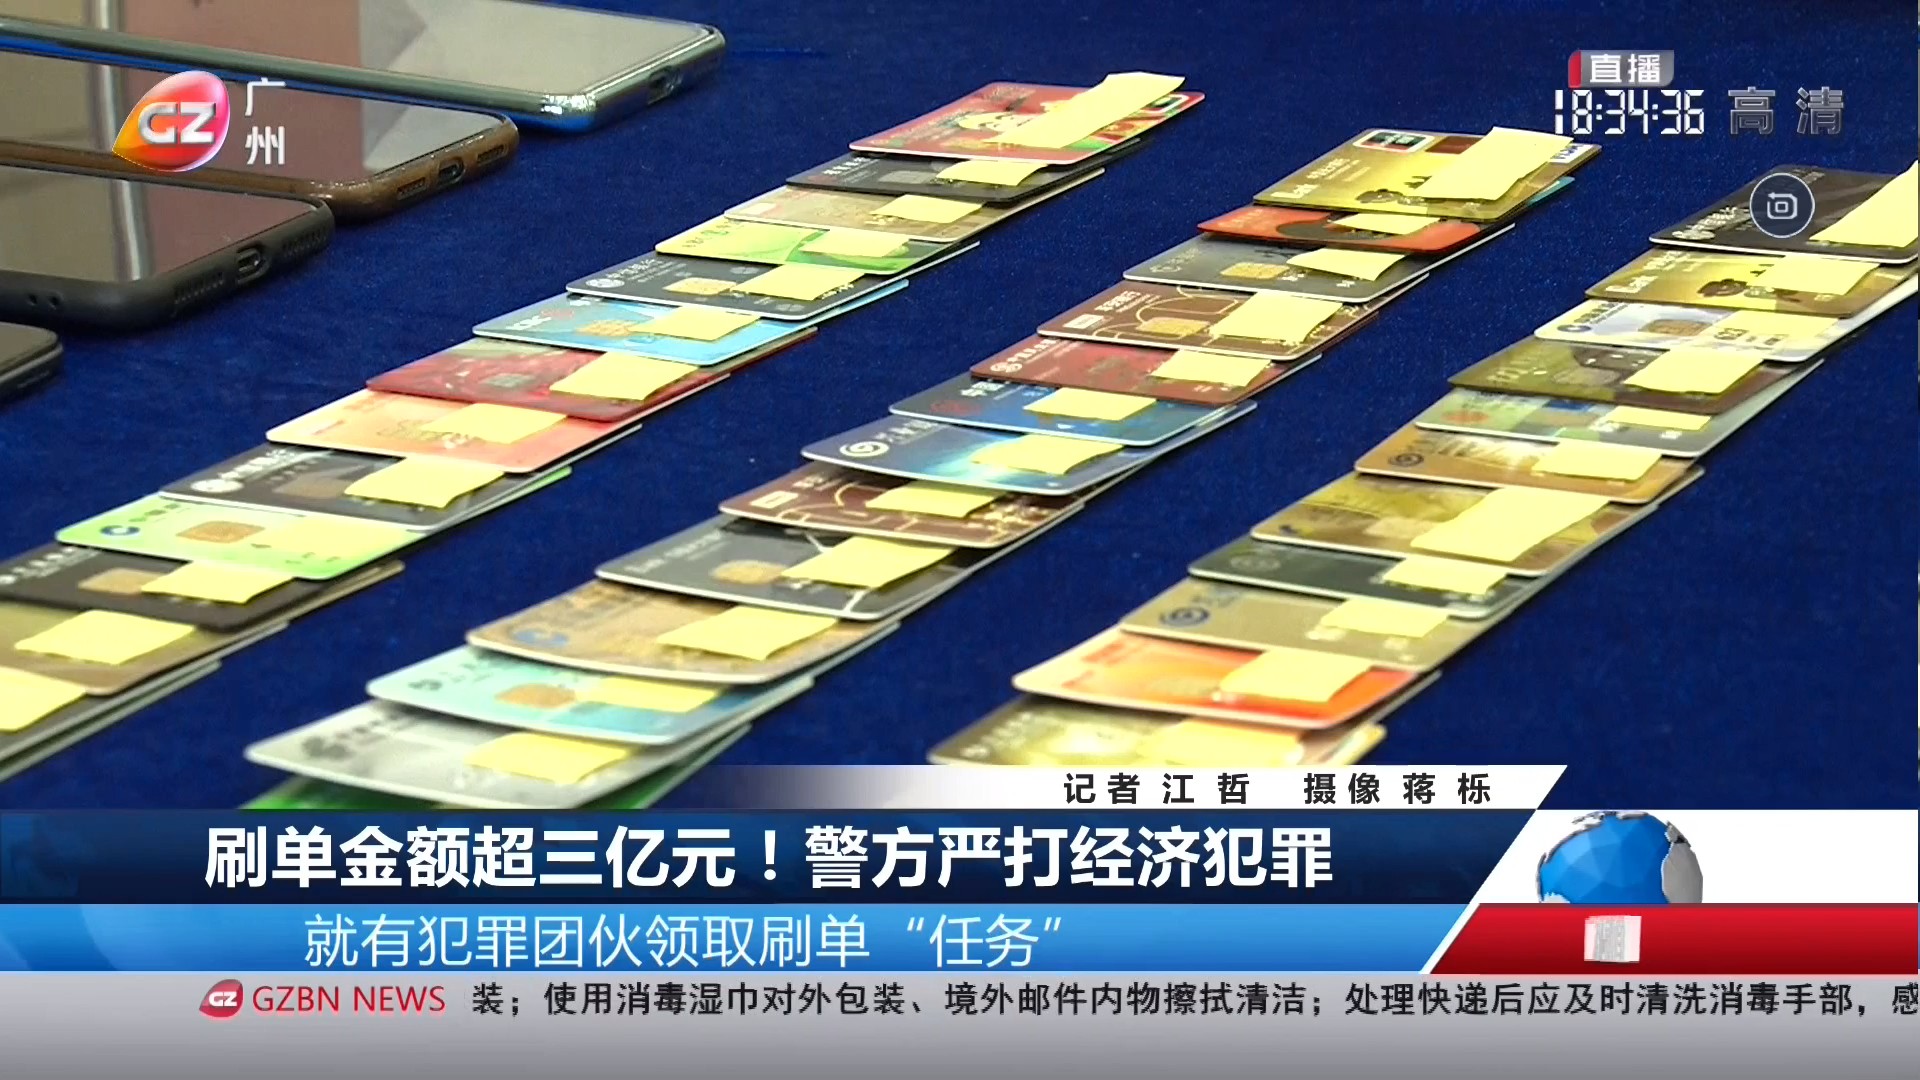 广州台综合频道 广视新闻 刷单金额超三亿元！警方严打经济犯罪